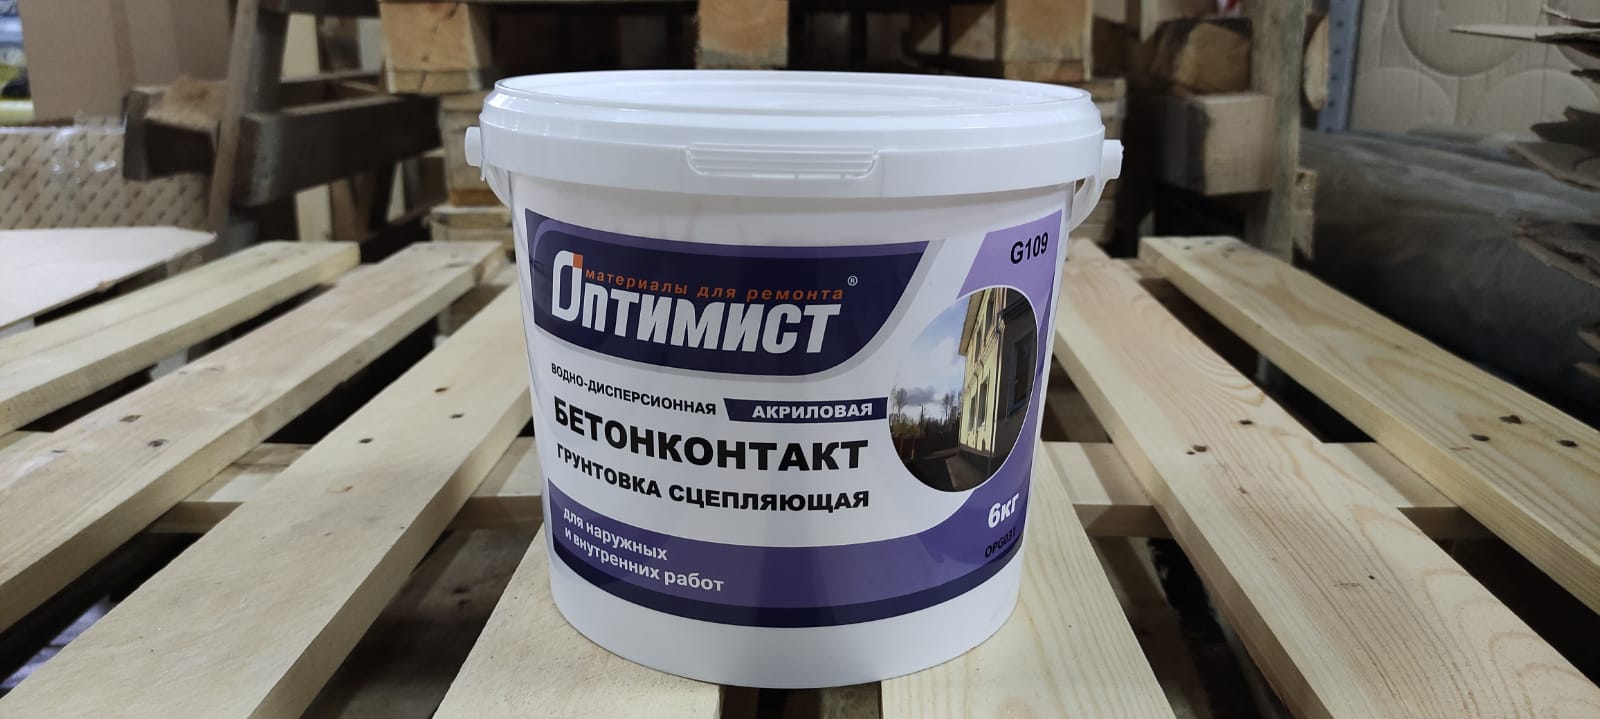 Грунтовка бетонконтакт (бетоноконтакт) для стен и пола морозостойкая 6 кг ОПТИМИСТ G 109